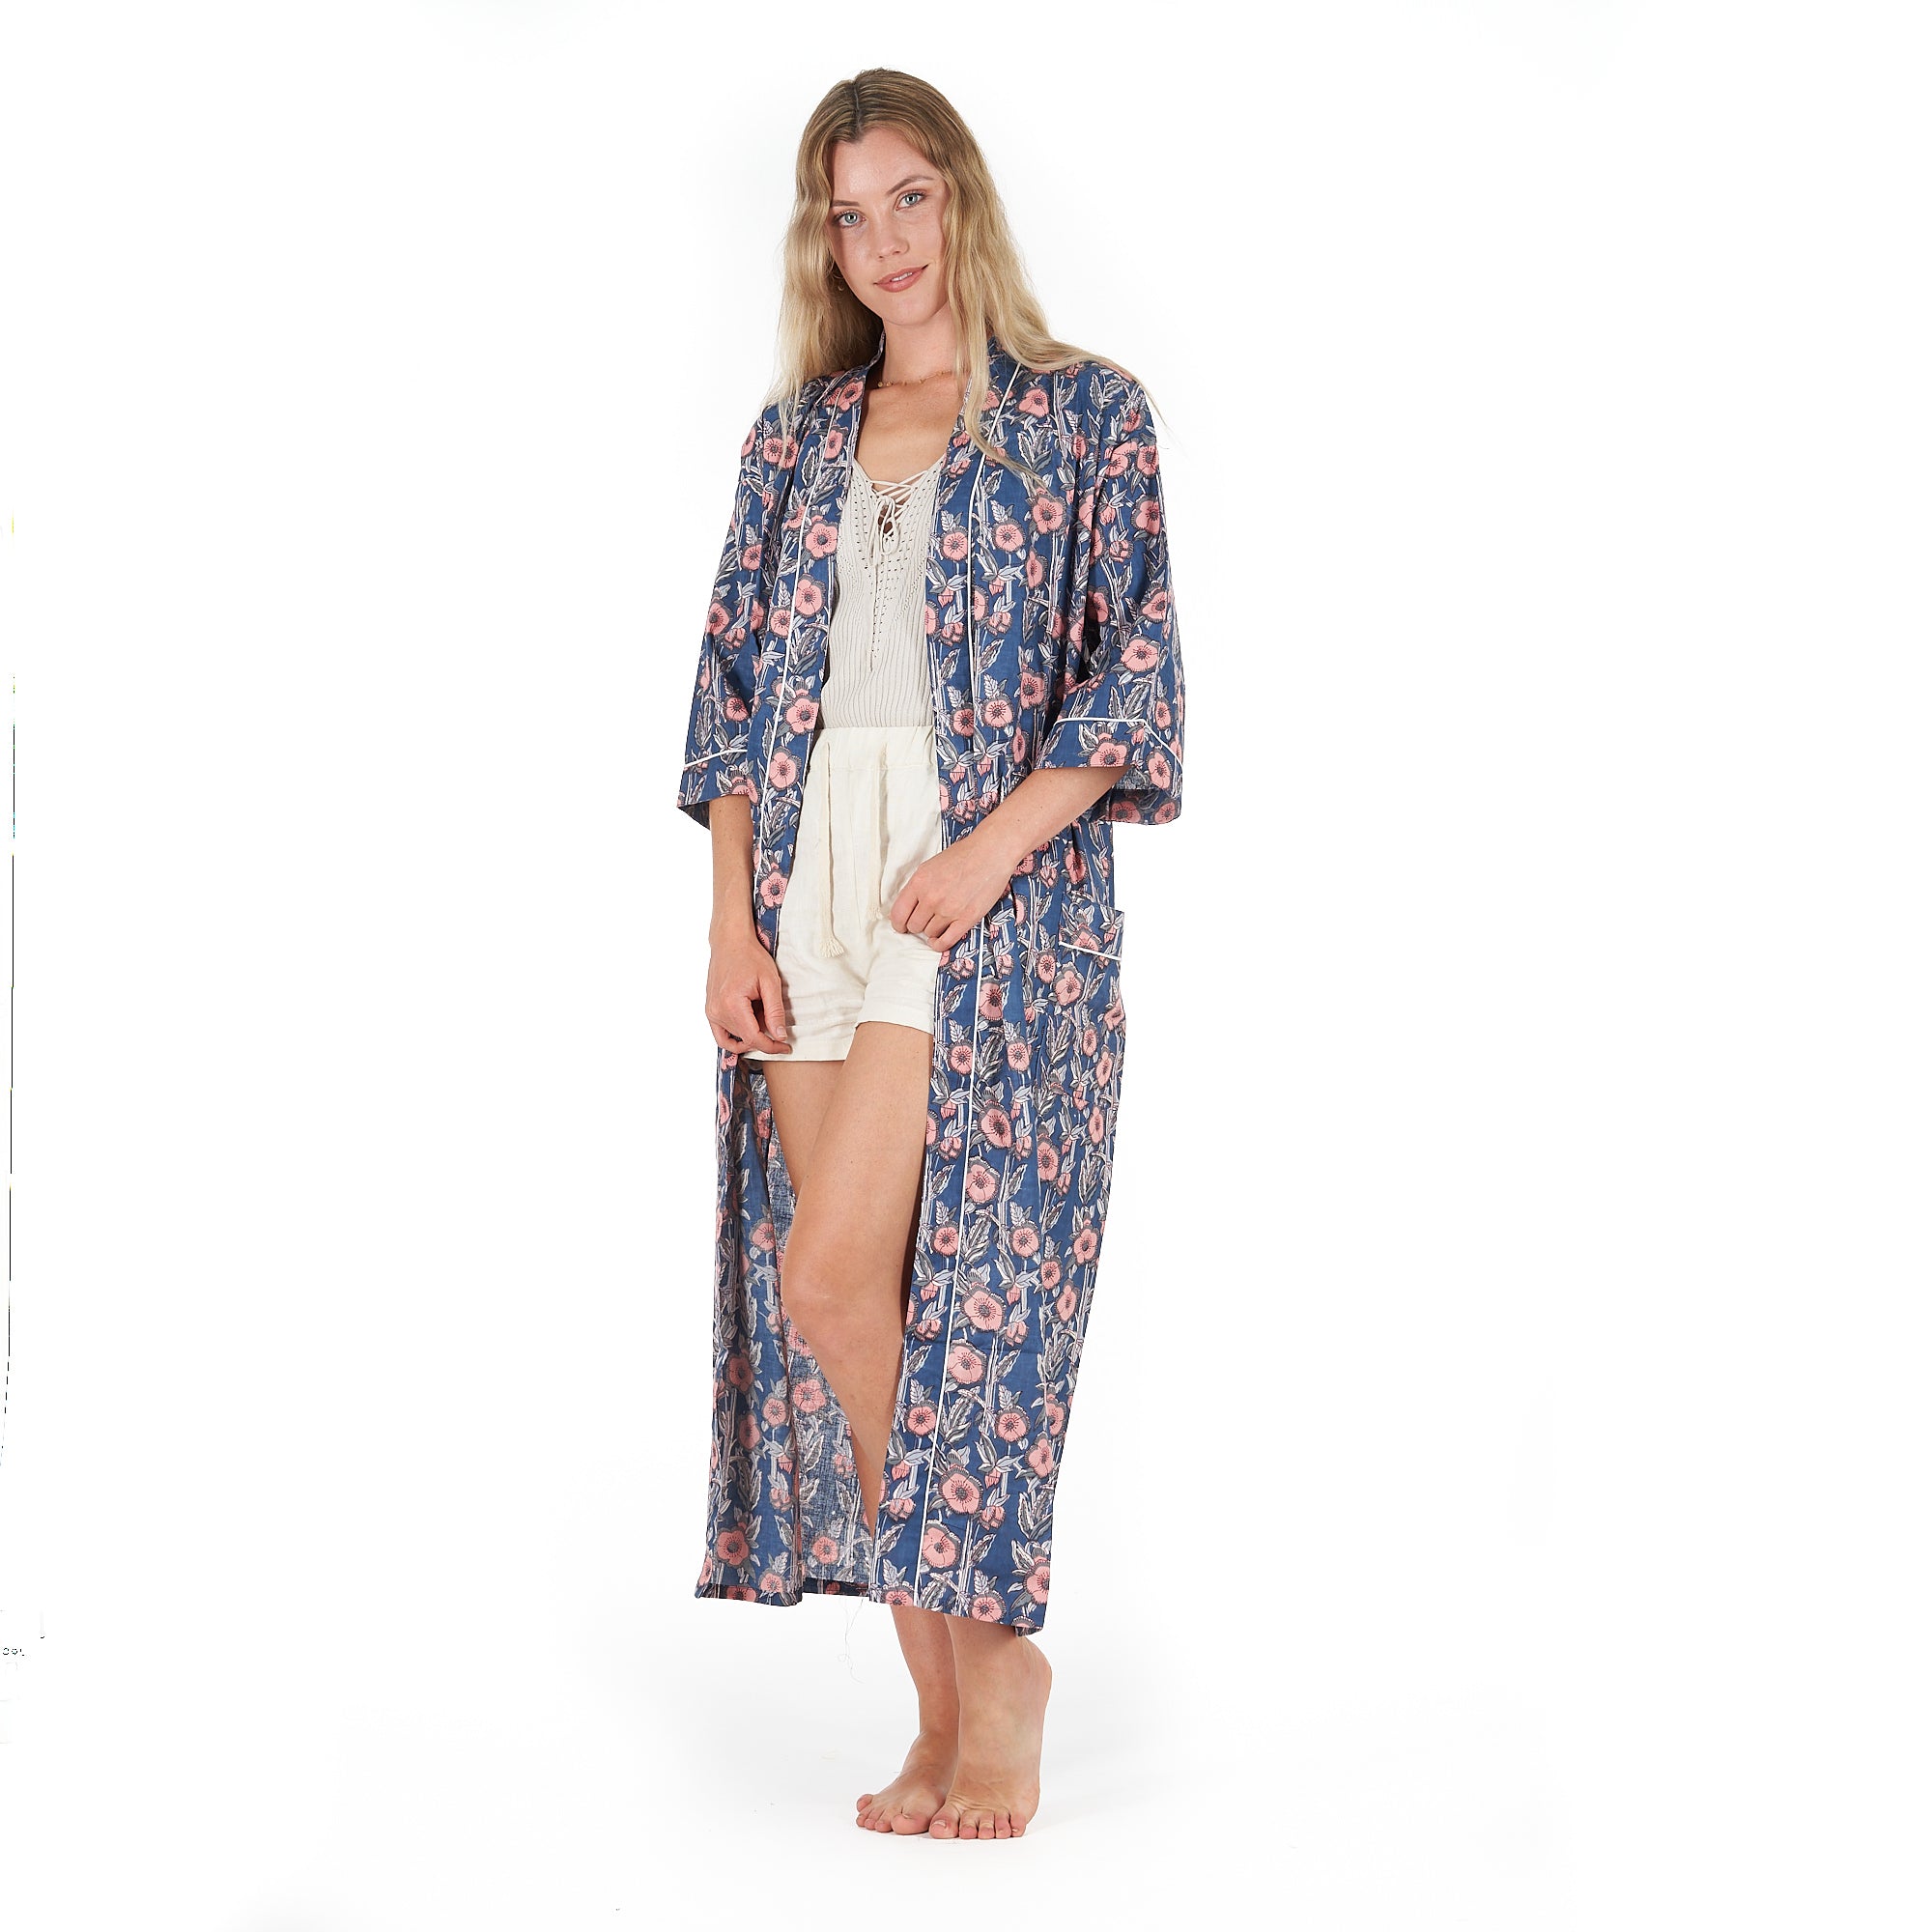 'R & R Chic' 100% Cotton Kimono Robe